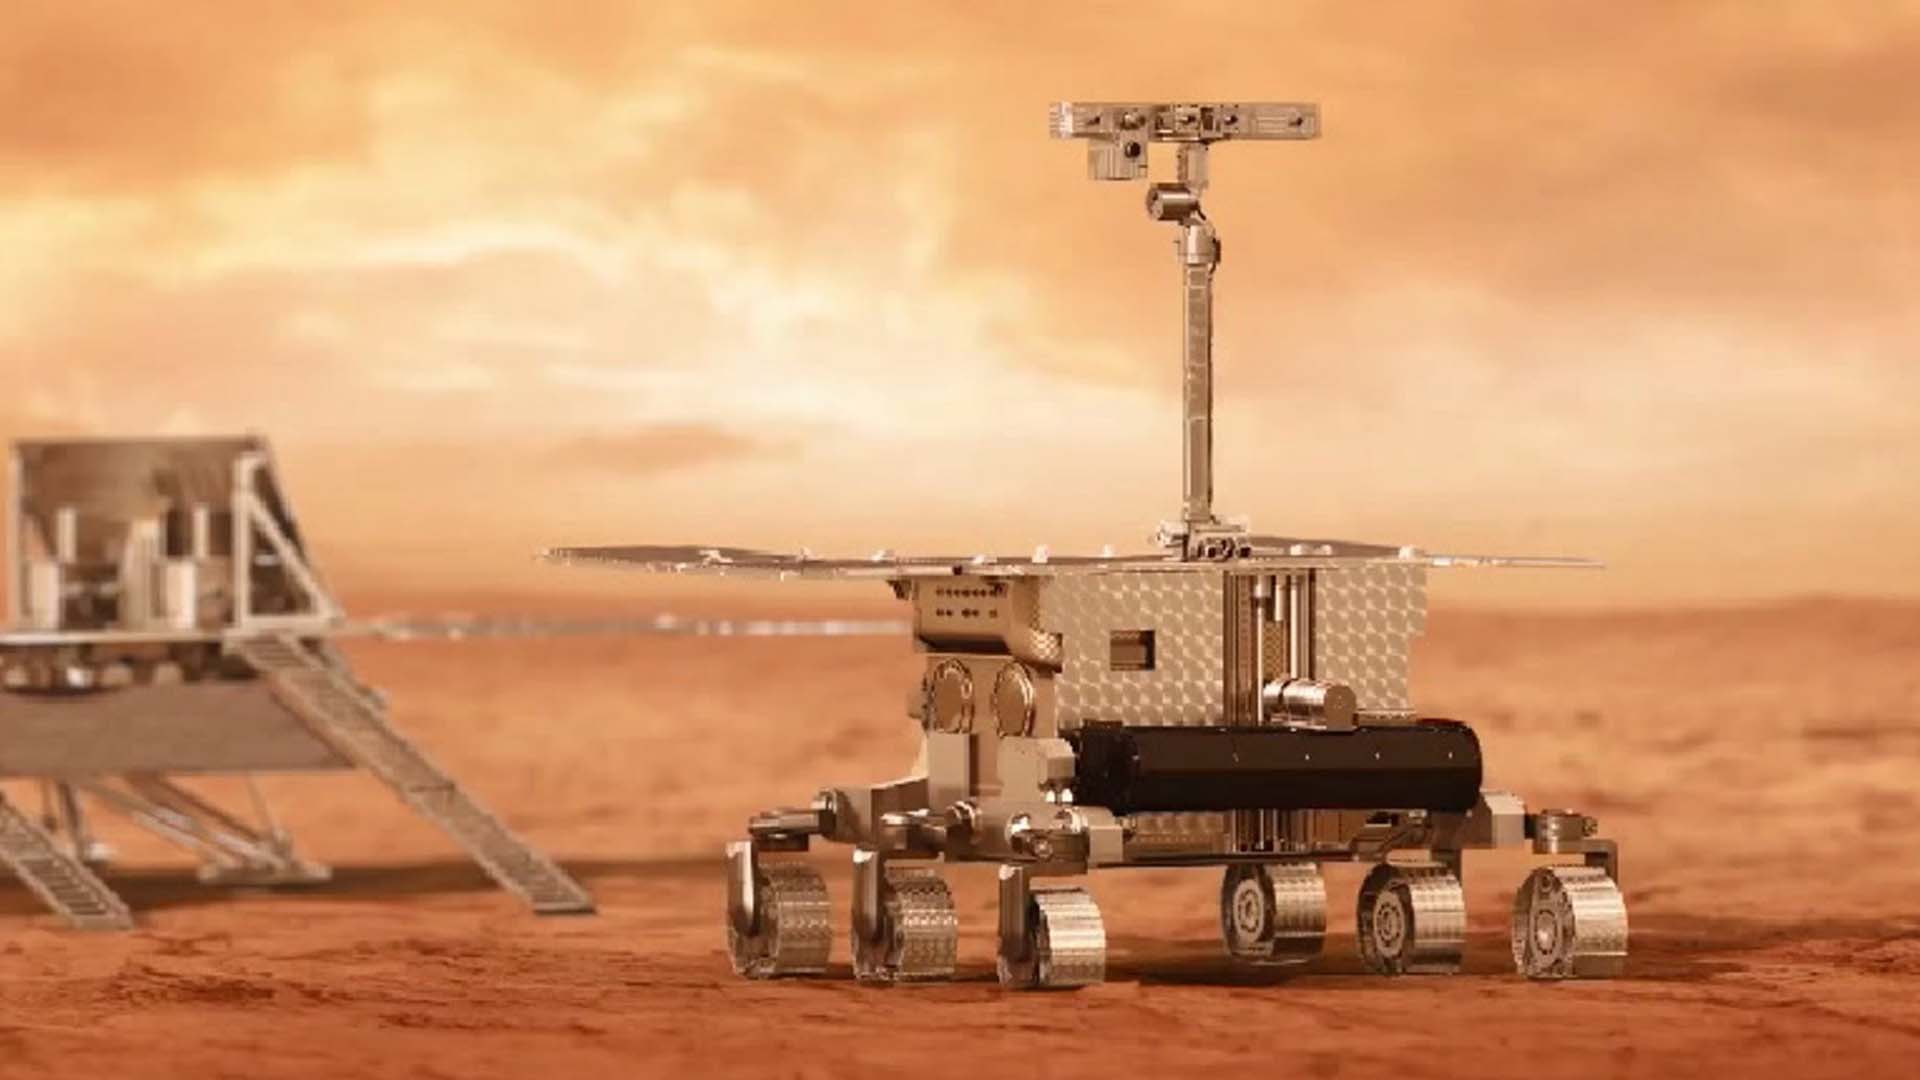 El rover ExoMars europeo-ruso, llamado Rosalind Franklin quiere llegar a Marte (ESA)